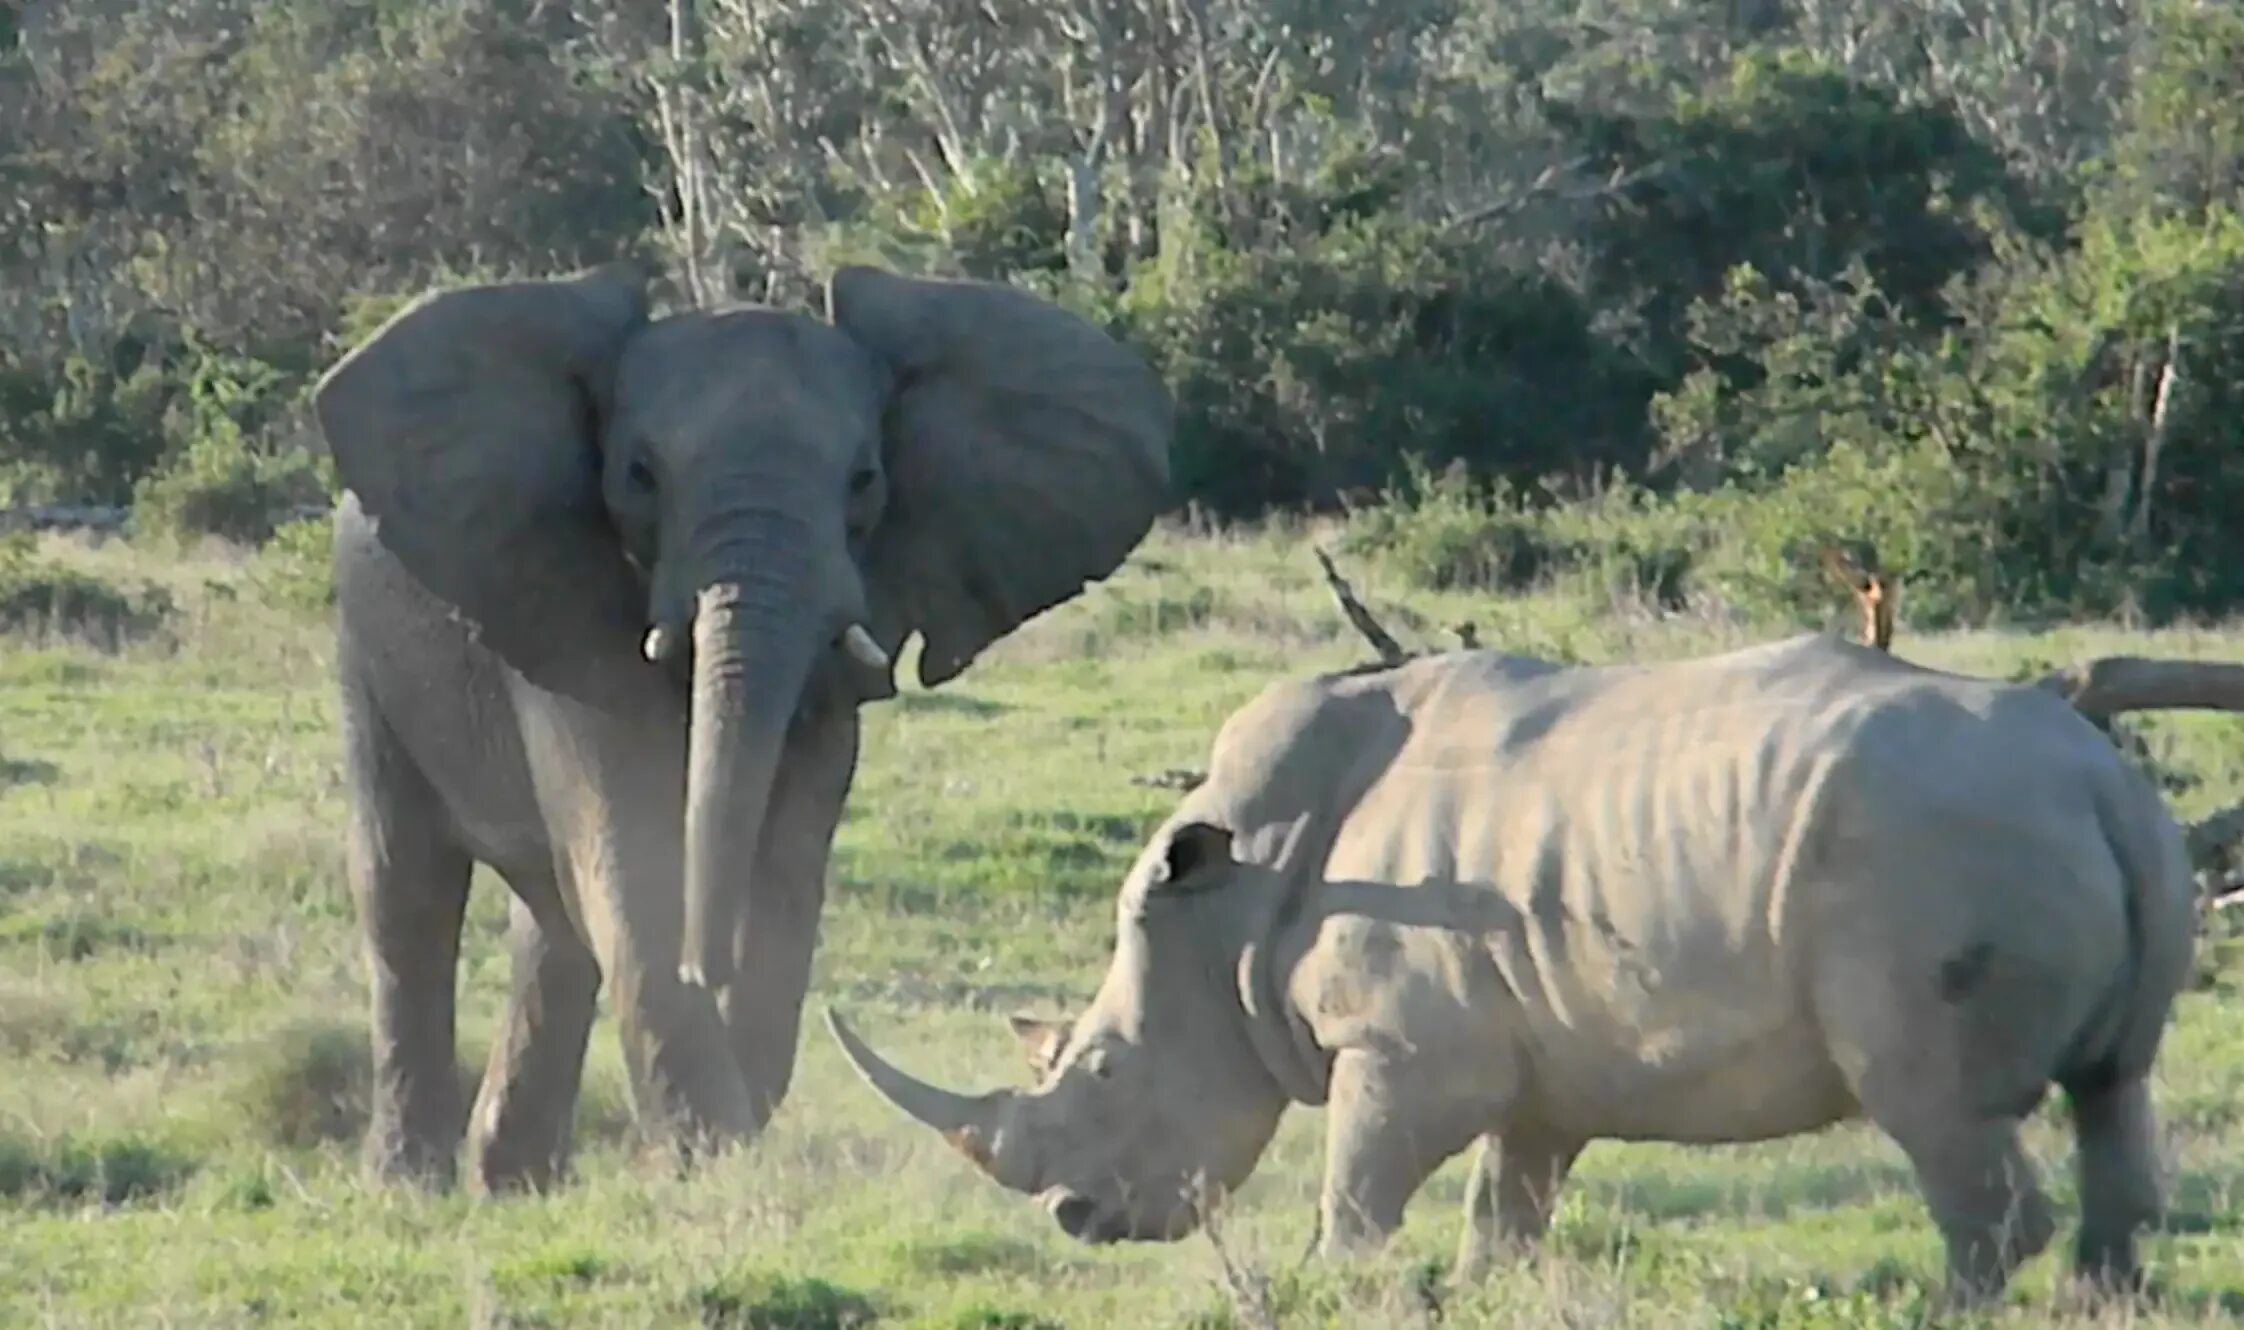 Elephant rhino. Носорог Бегемот и гиппопотам. Слон гиппопотам носорог. Индийский носорог и индийский слон.